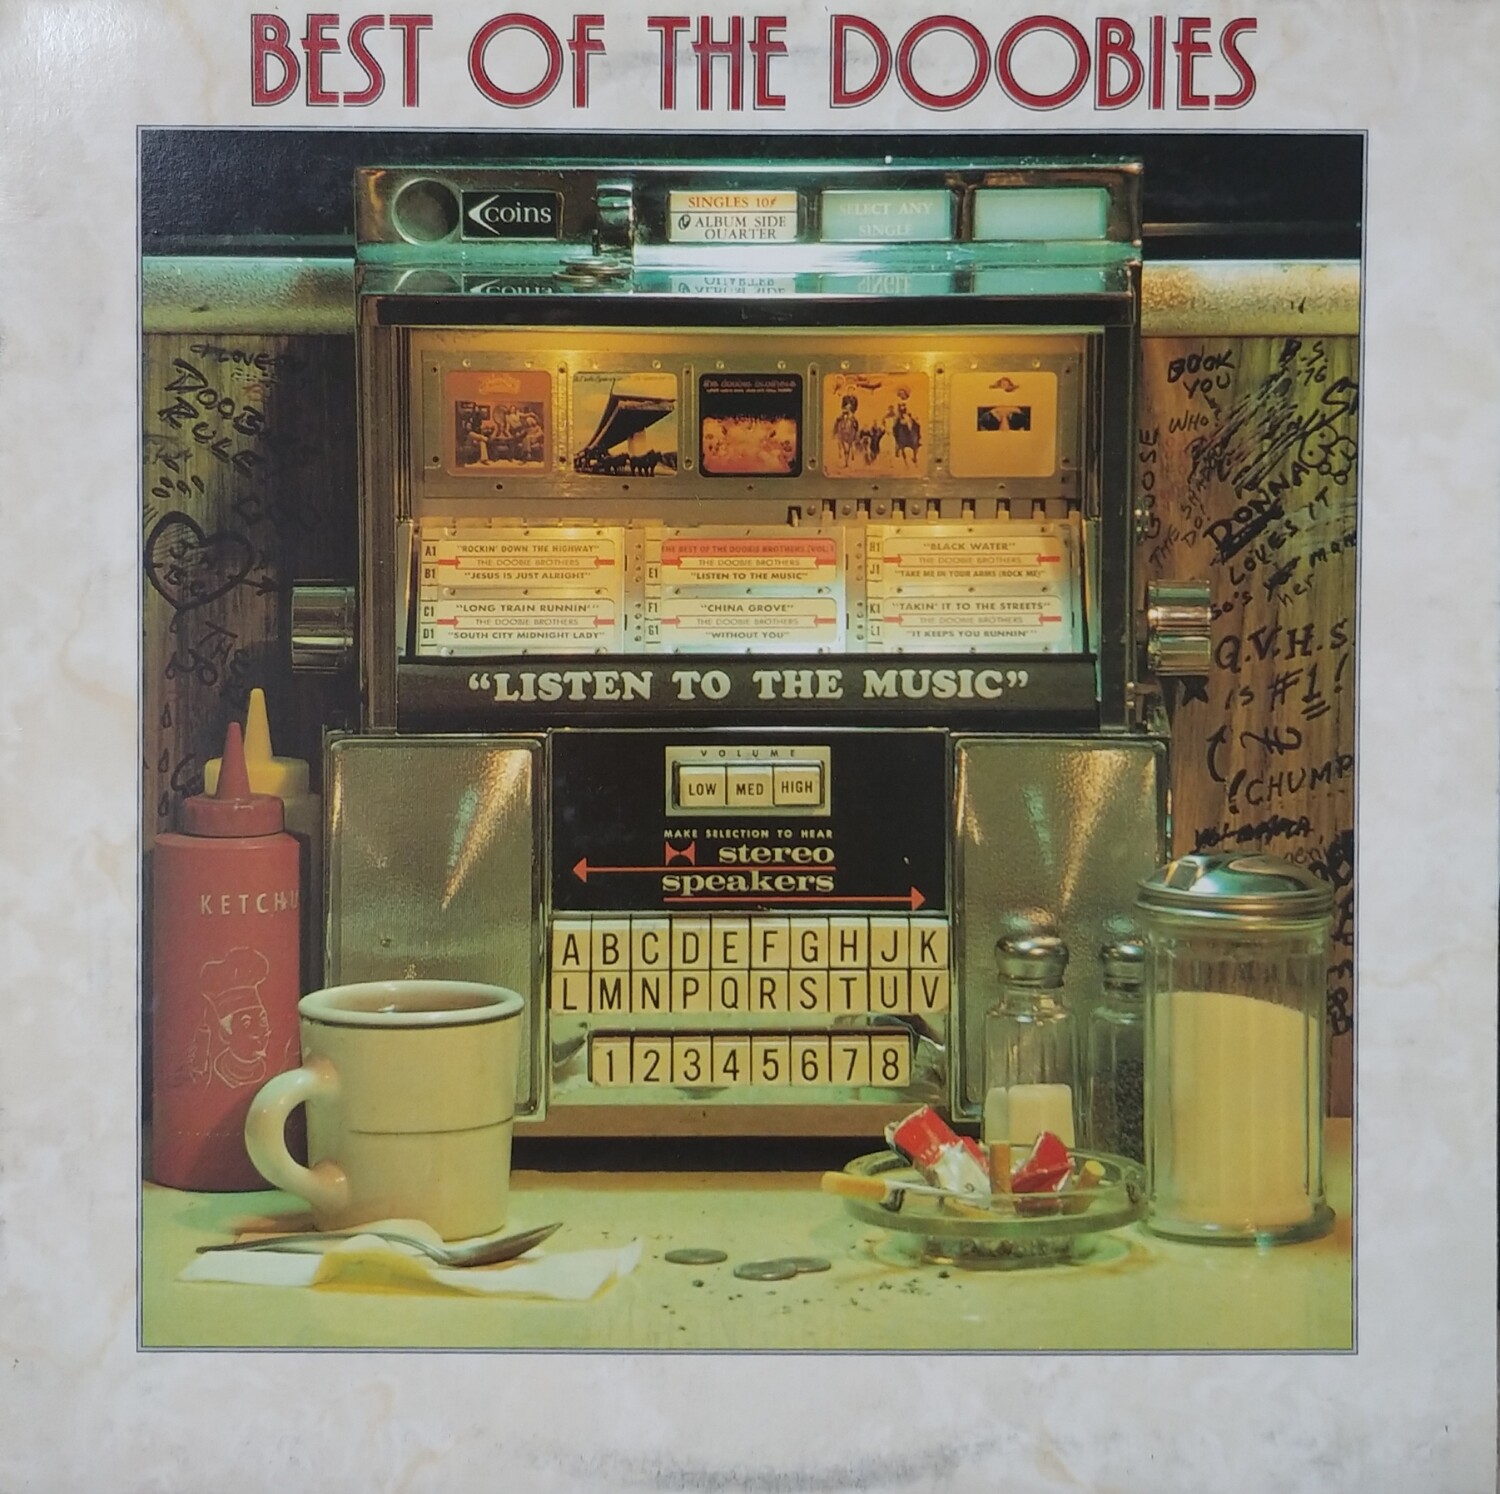 The Doobie Brothers - Best of The Doobies